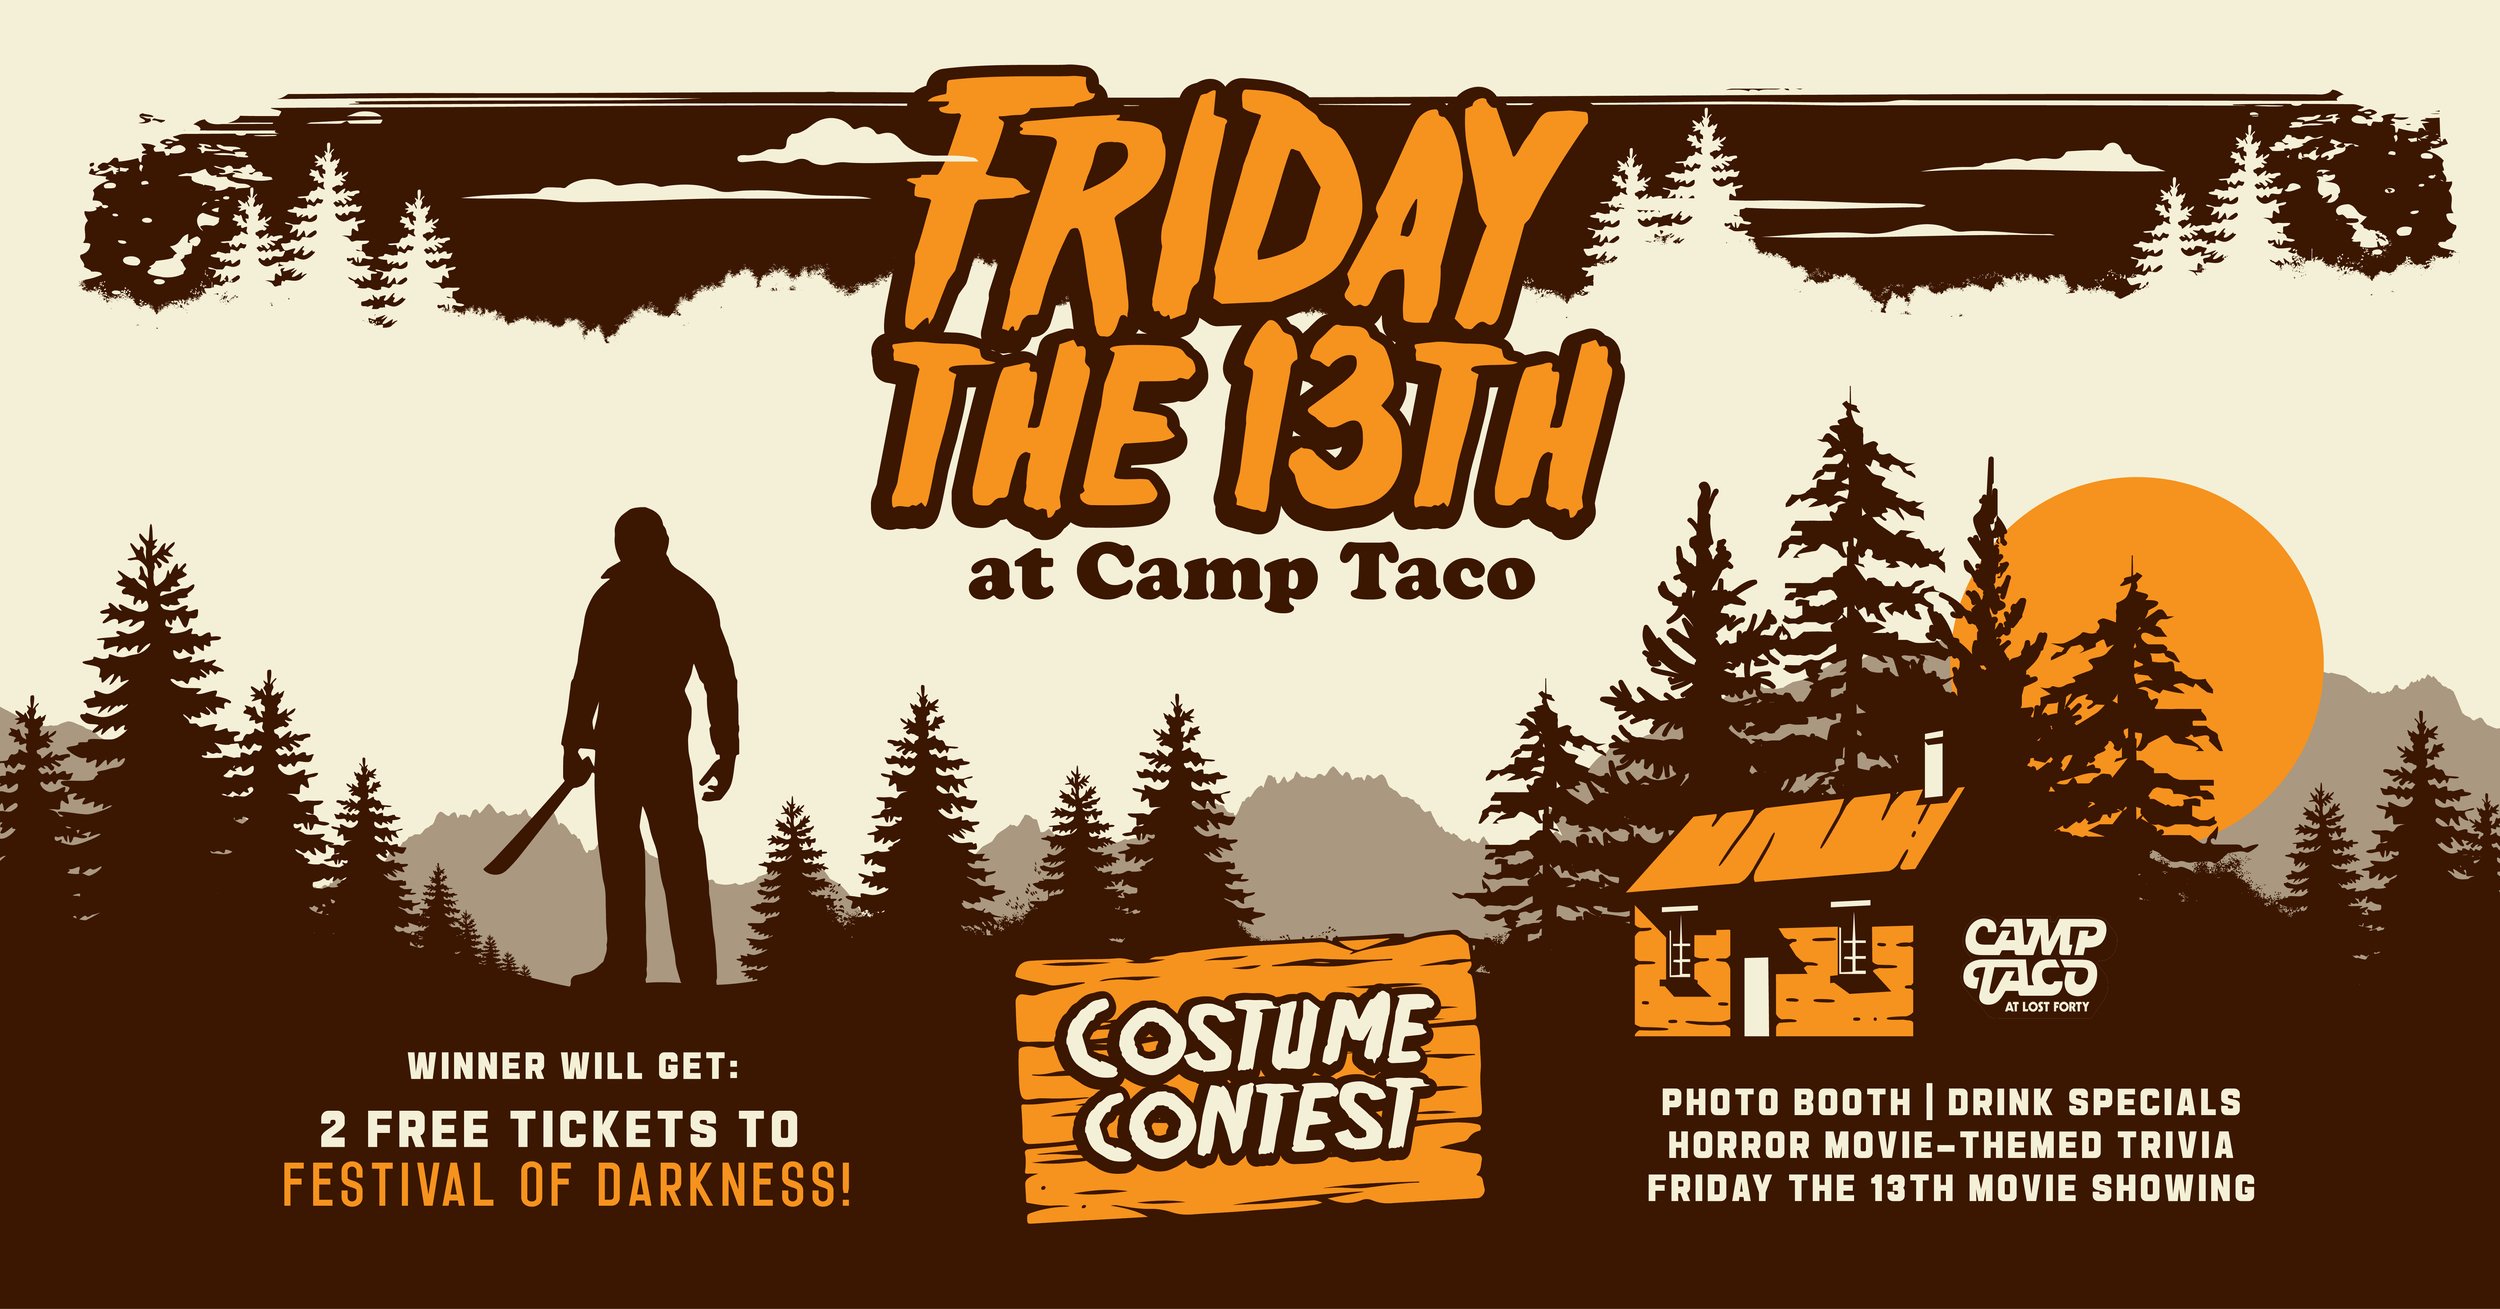 Friday The 13th: Horror at Camp Crystal Lake